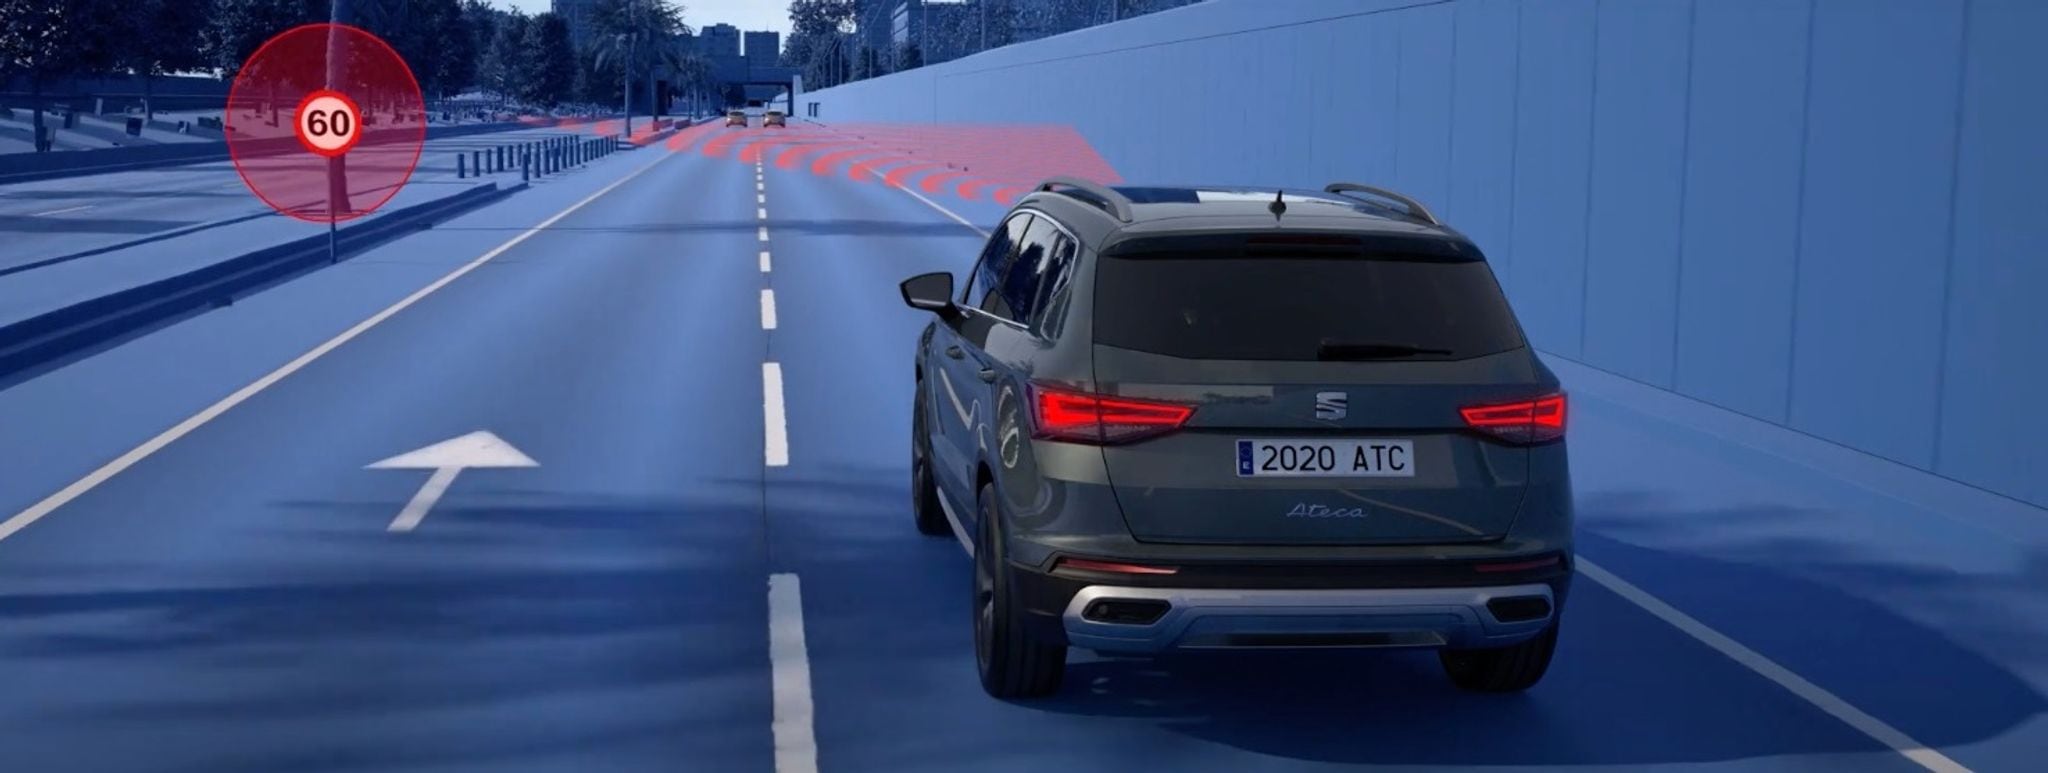 Las cámaras frontales del nuevo SEAT León 2021 visualizan las señales de velocidad máxima. Foto: Seat/dpa